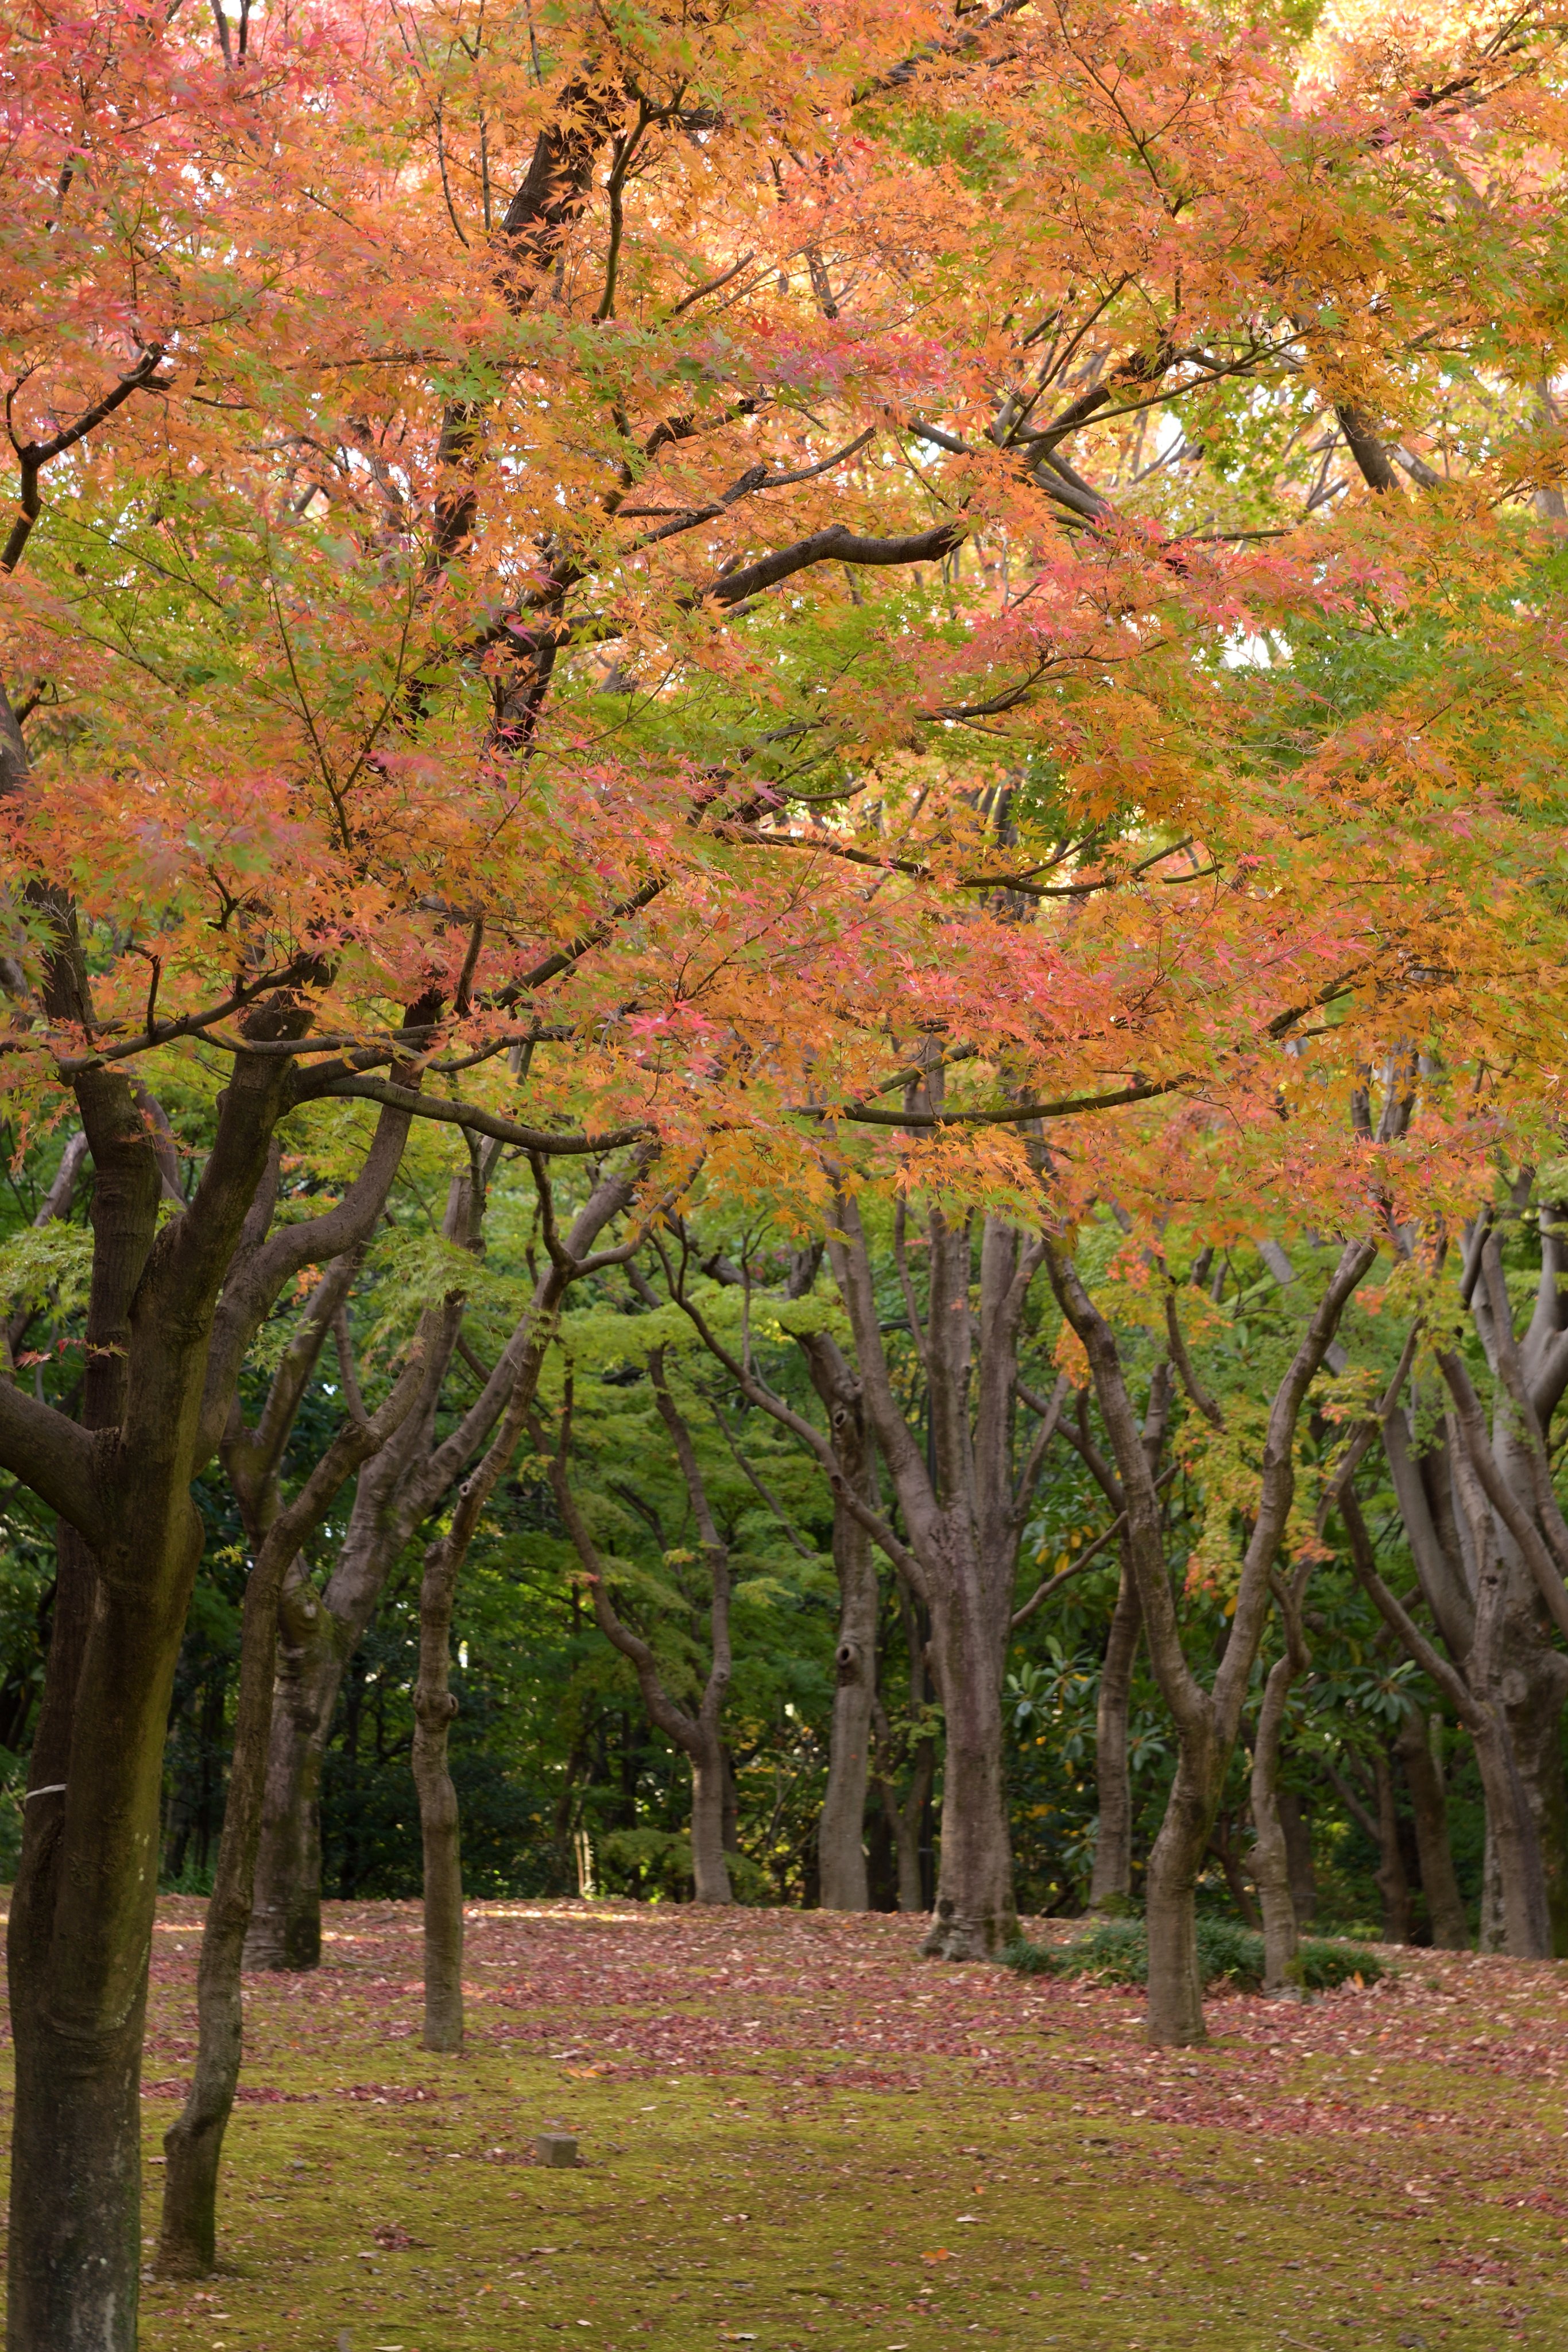 千代田区 昨日 11月日 北の丸公園 の 紅葉 の様子です 樹によっては赤や黄色に染まり始めています 靖国神社 の 銀杏 並木はまだ少し早かったです 千代田区 T Co Vo7k45kggr Twitter